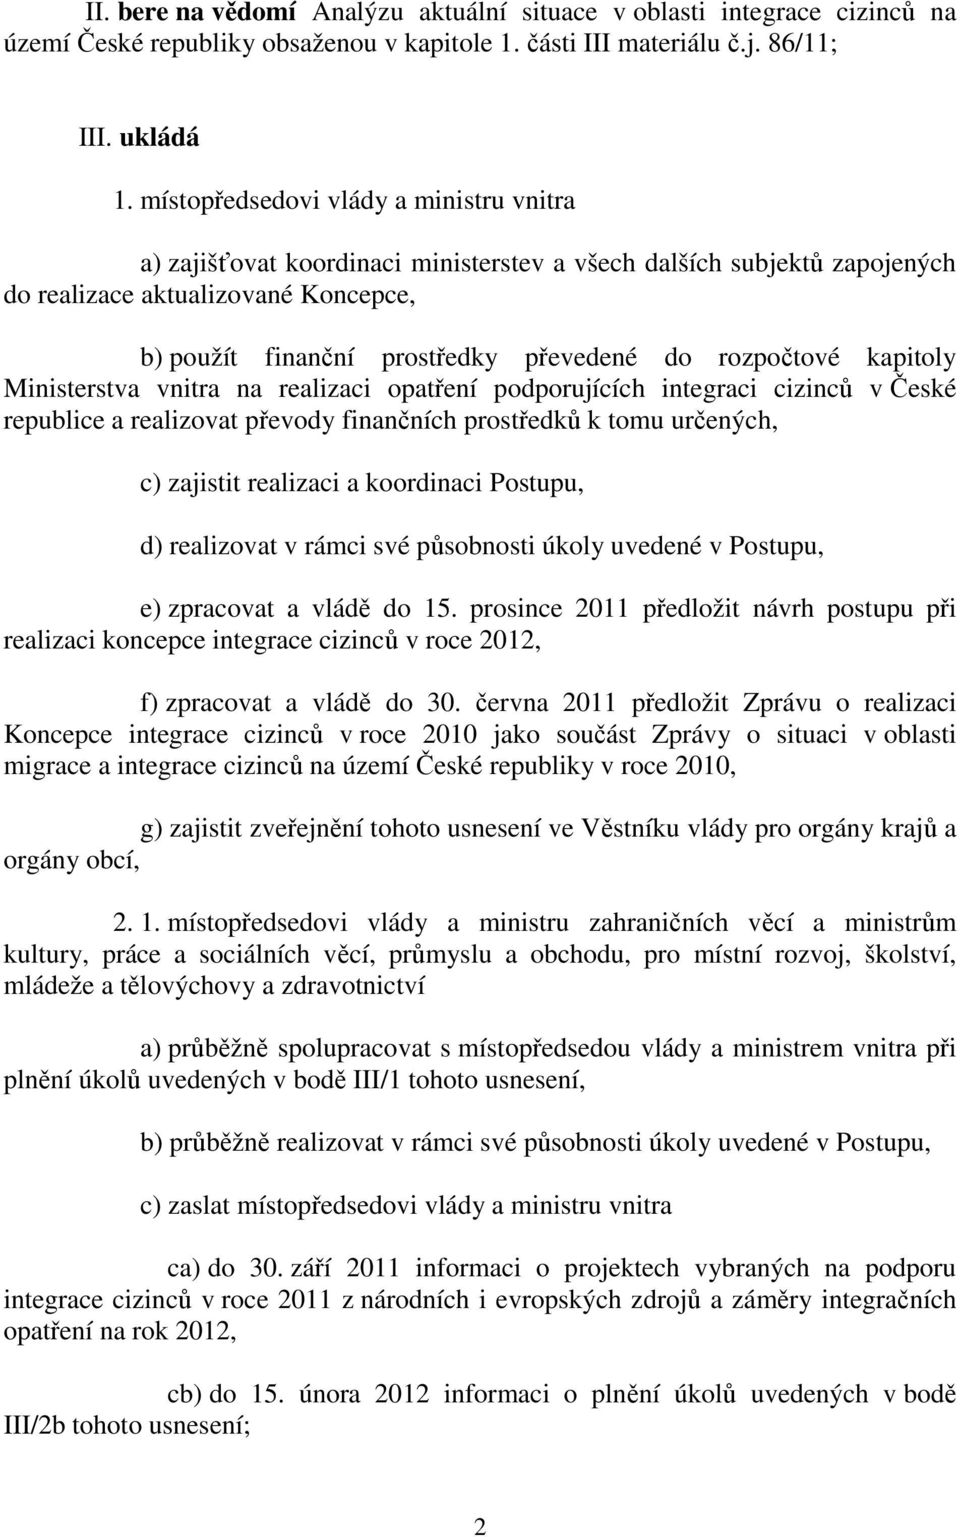 rozpočtové kapitoly Ministerstva vnitra na realizaci opatření podporujících integraci cizinců v České republice a realizovat převody finančních prostředků k tomu určených, c) zajistit realizaci a